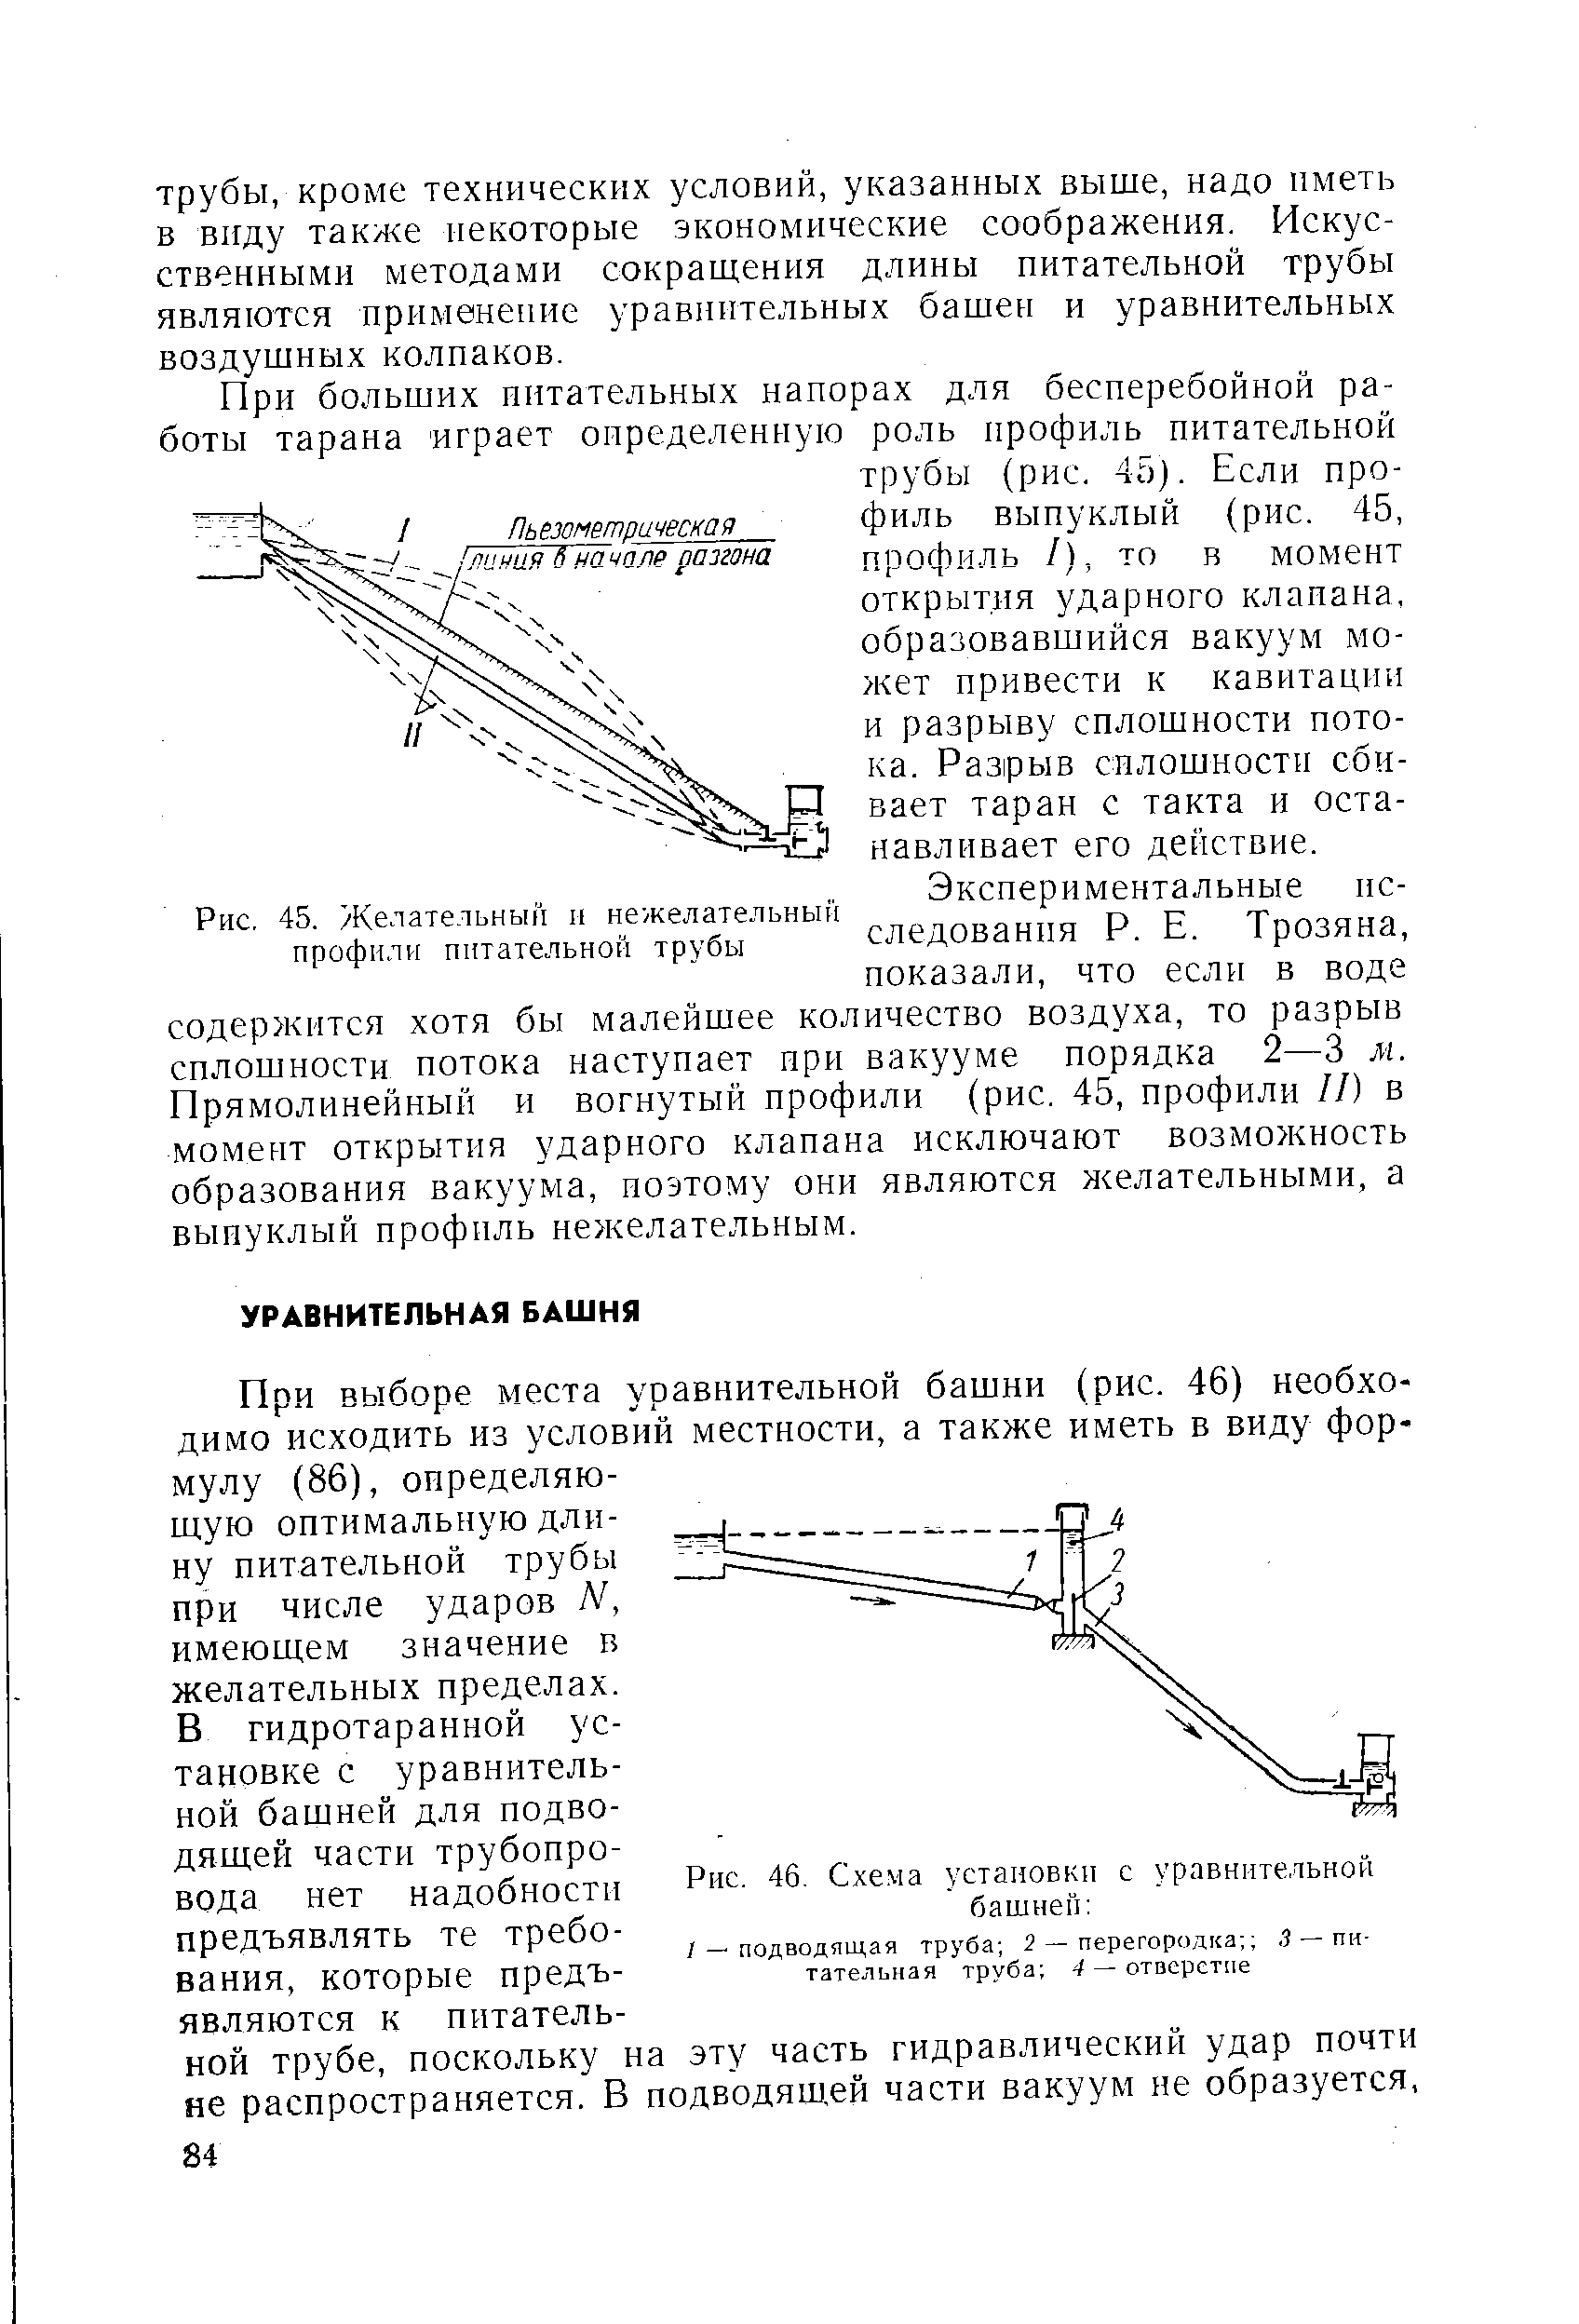 Рис. 46. Схема установки с уравнительной башней 
